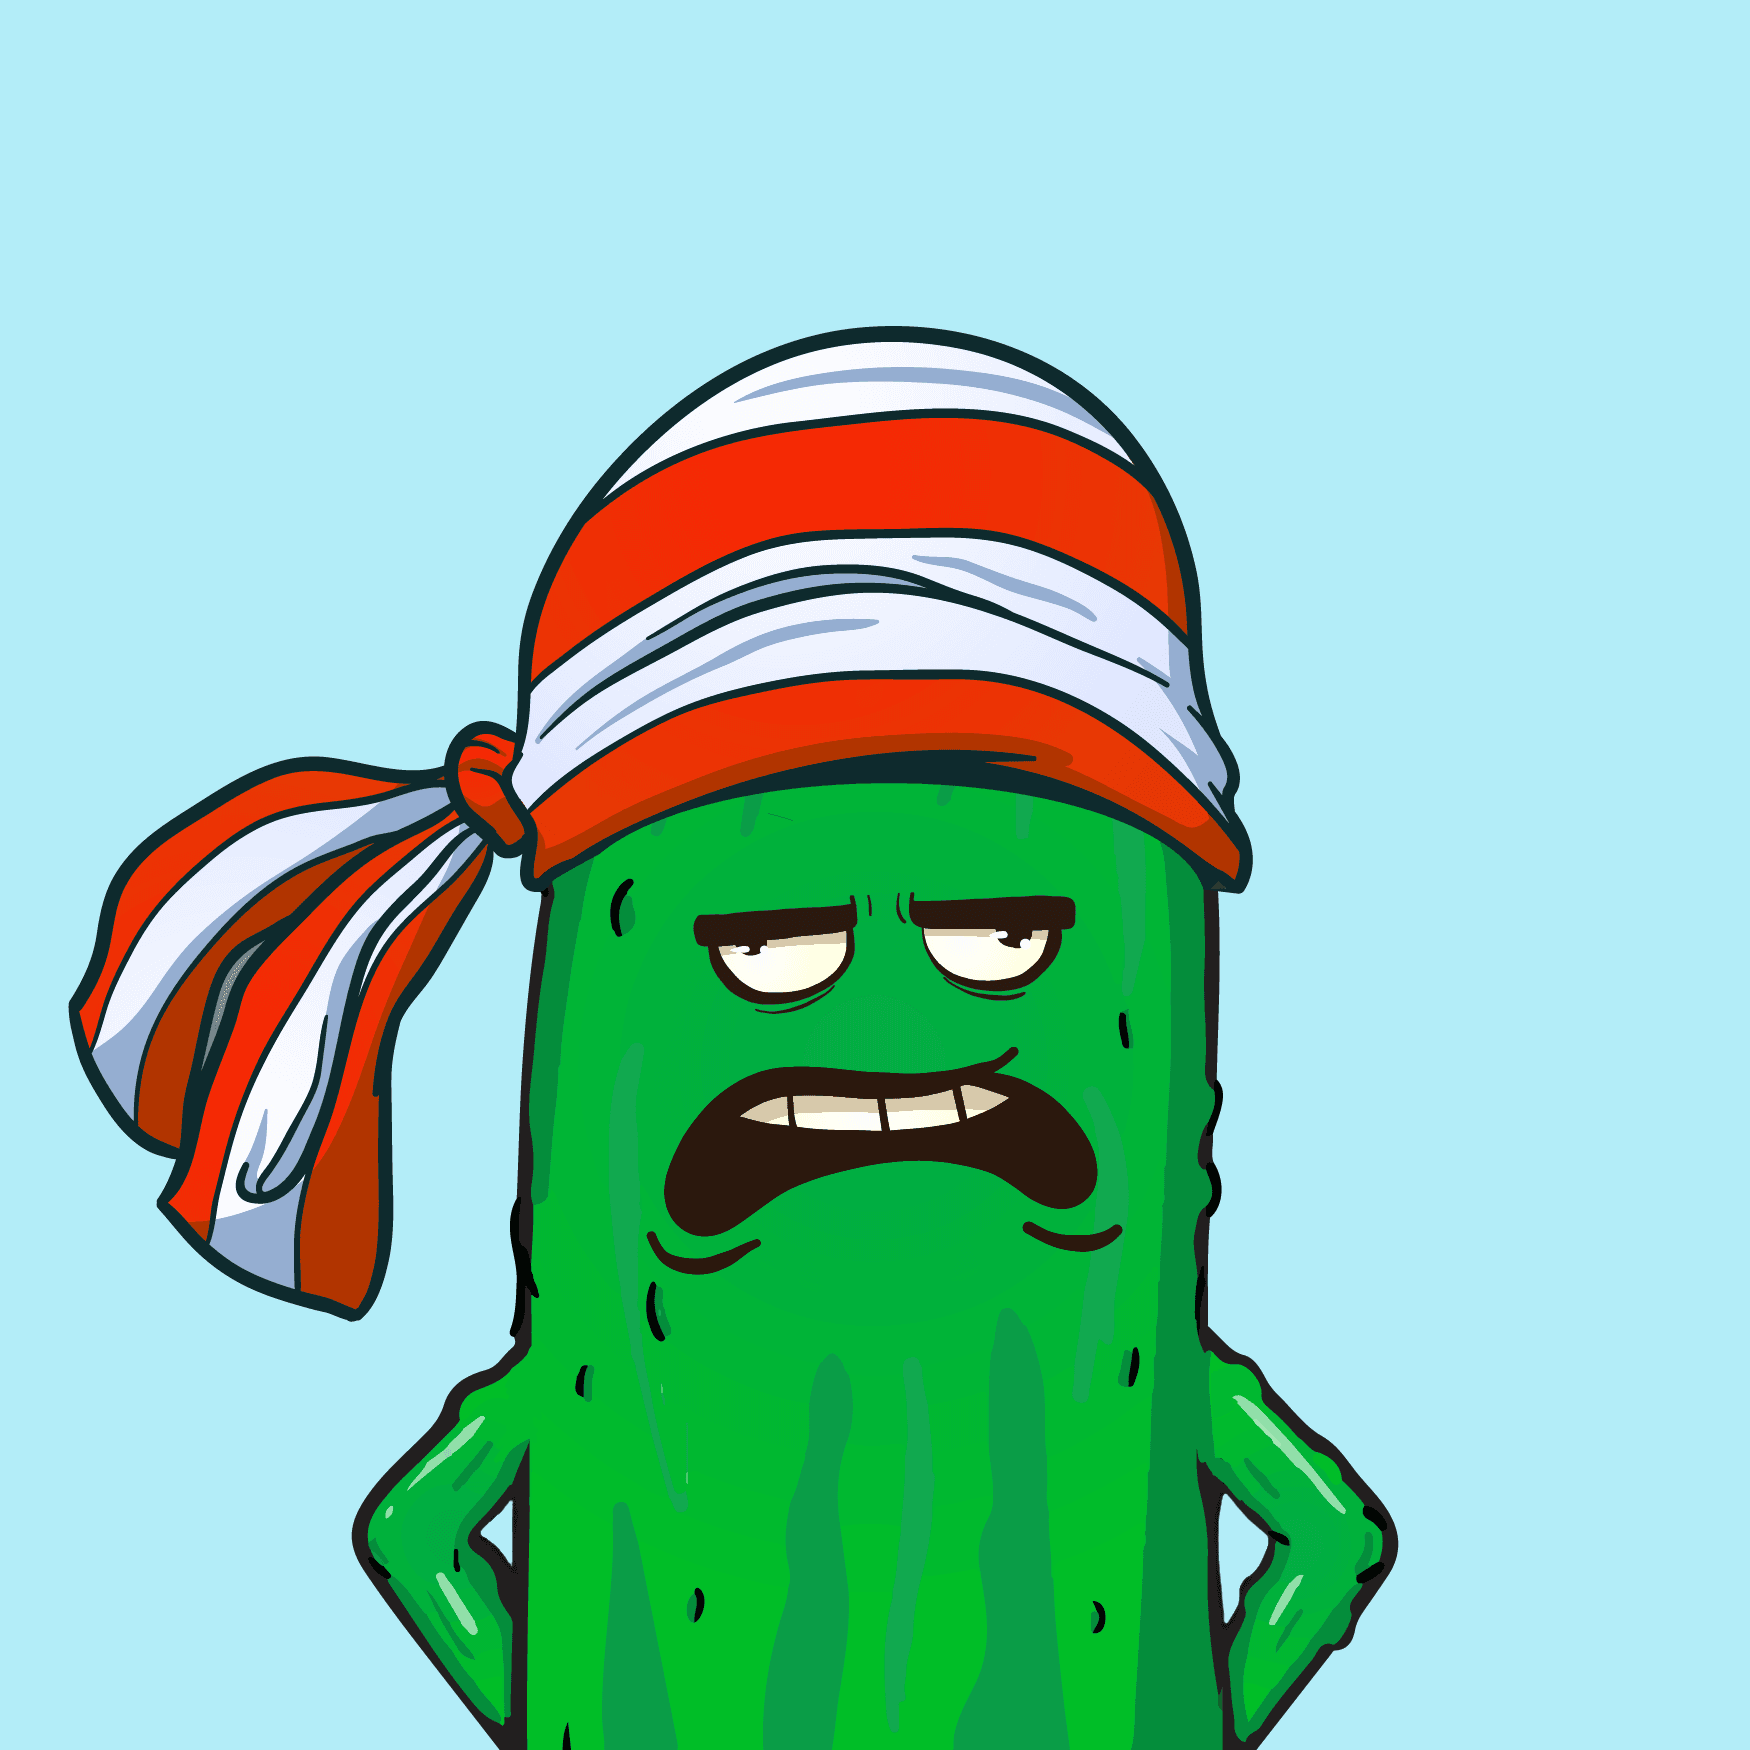 Master cucumber #11